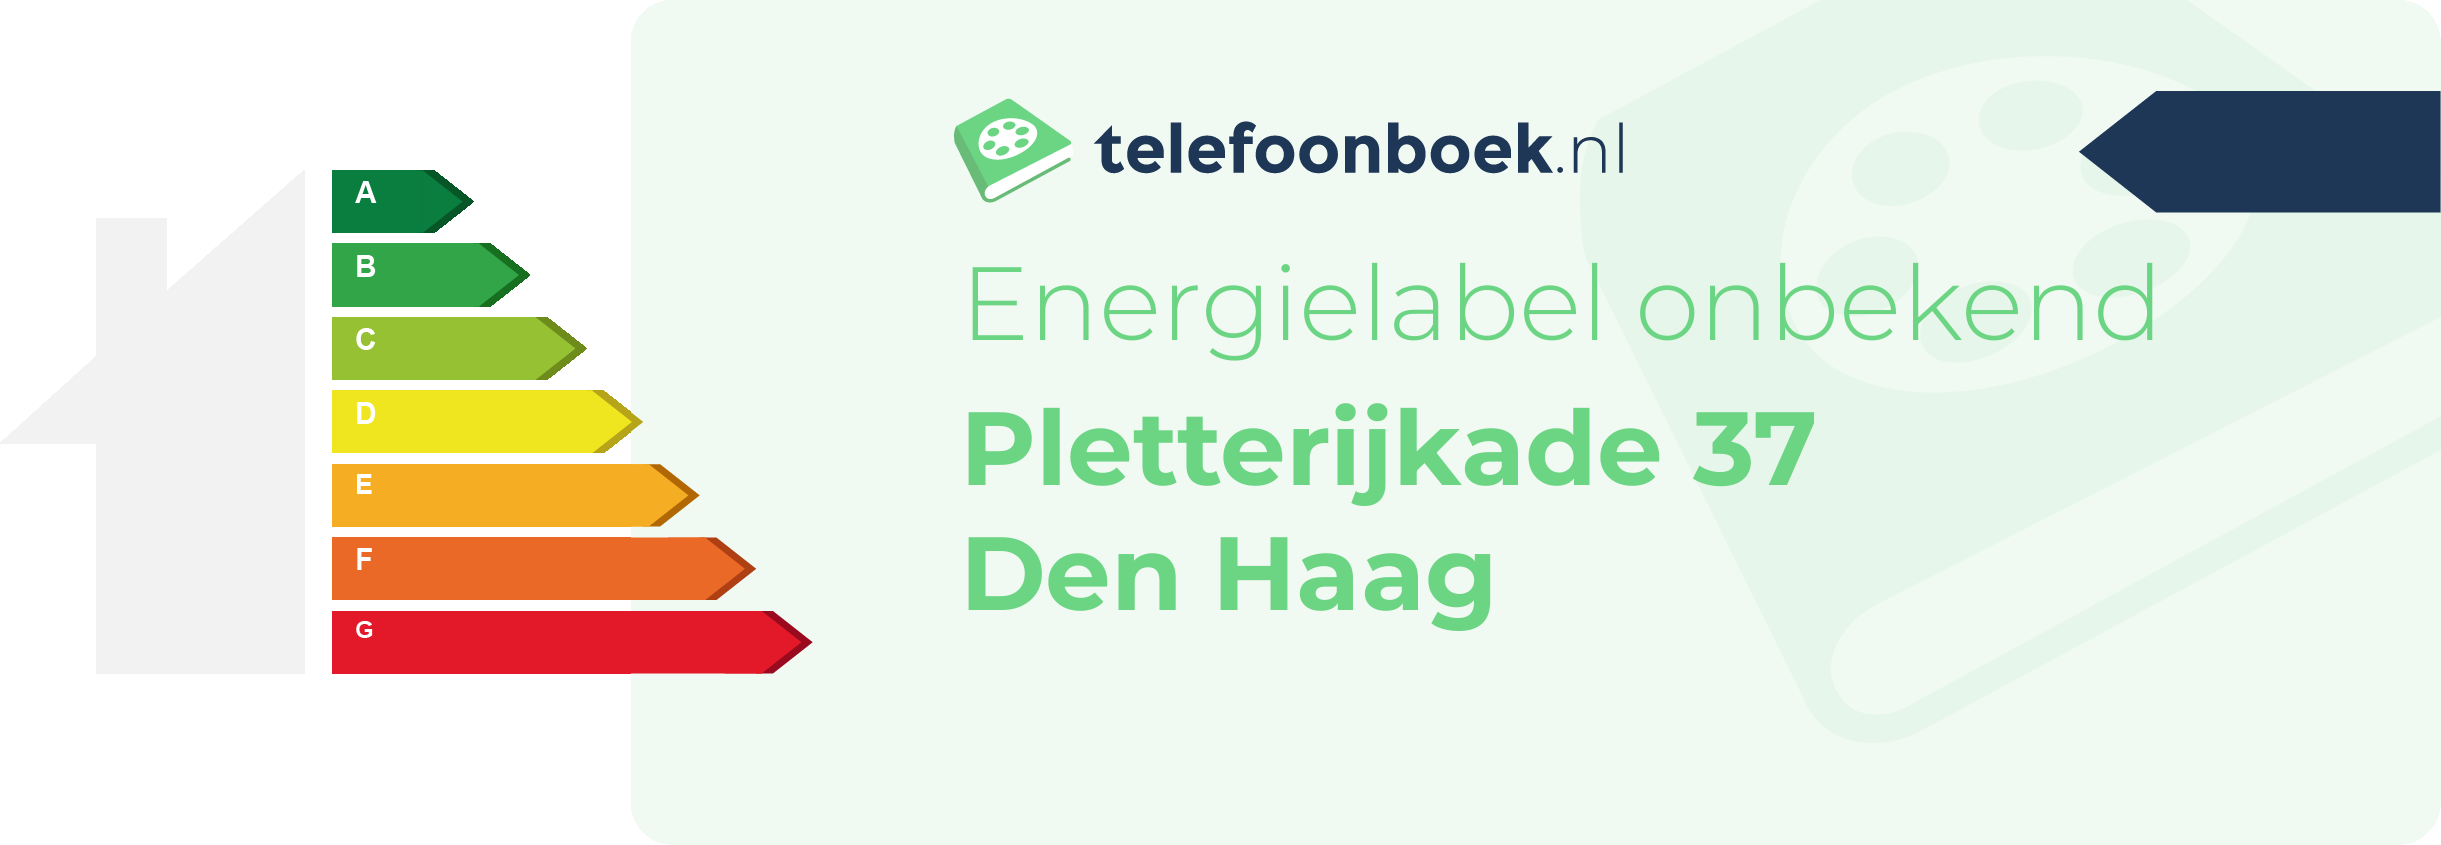 Energielabel Pletterijkade 37 Den Haag